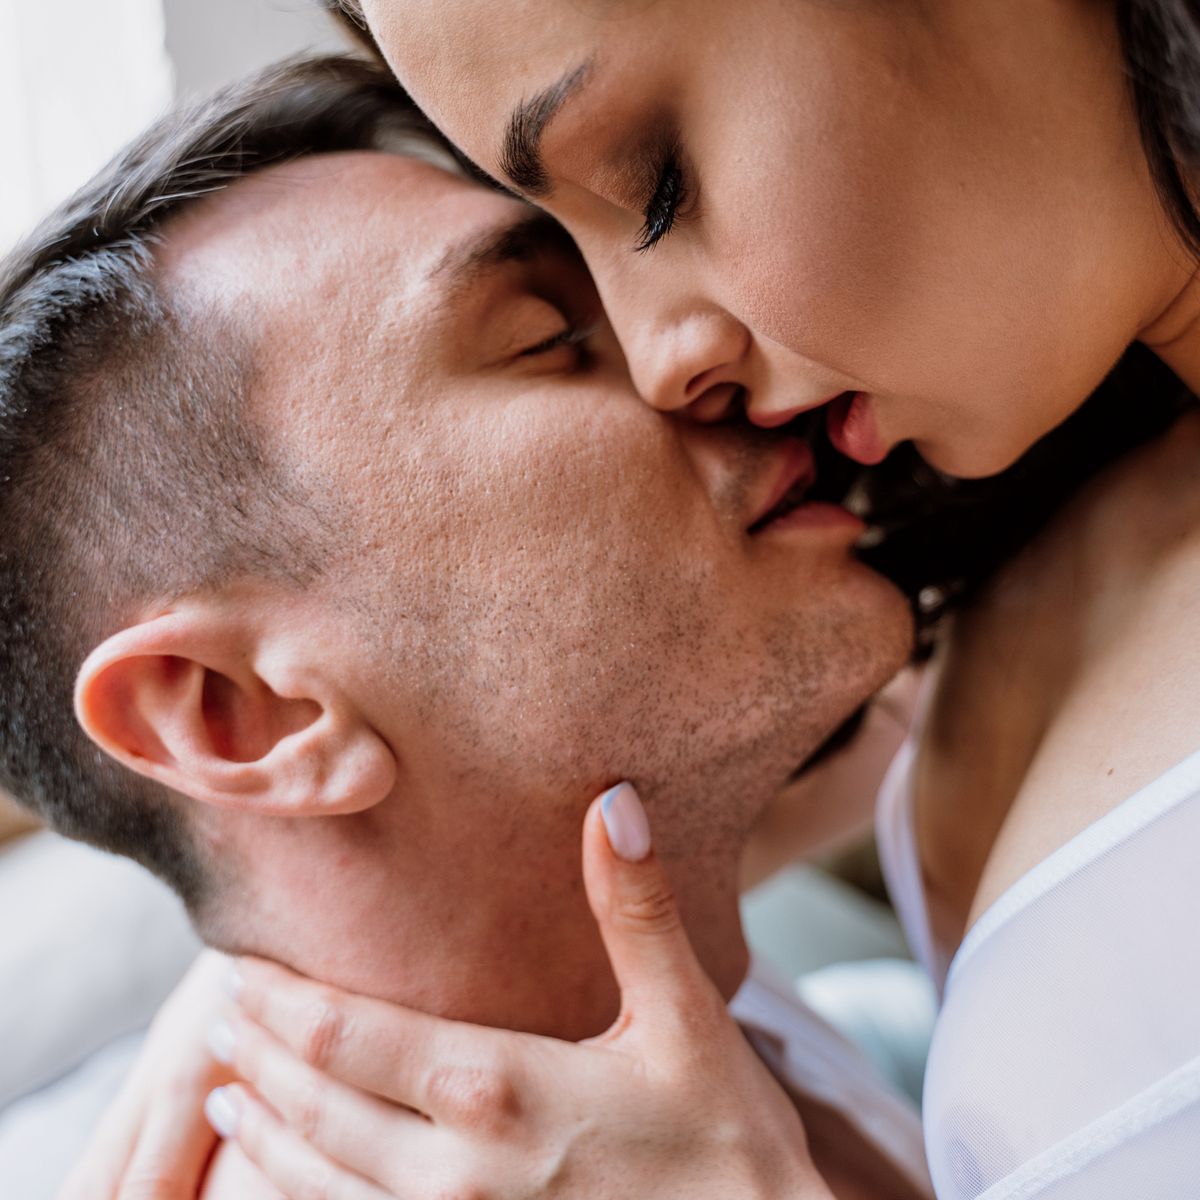 Los besos tienen más pros que contras, si seguimos los consejos de salud